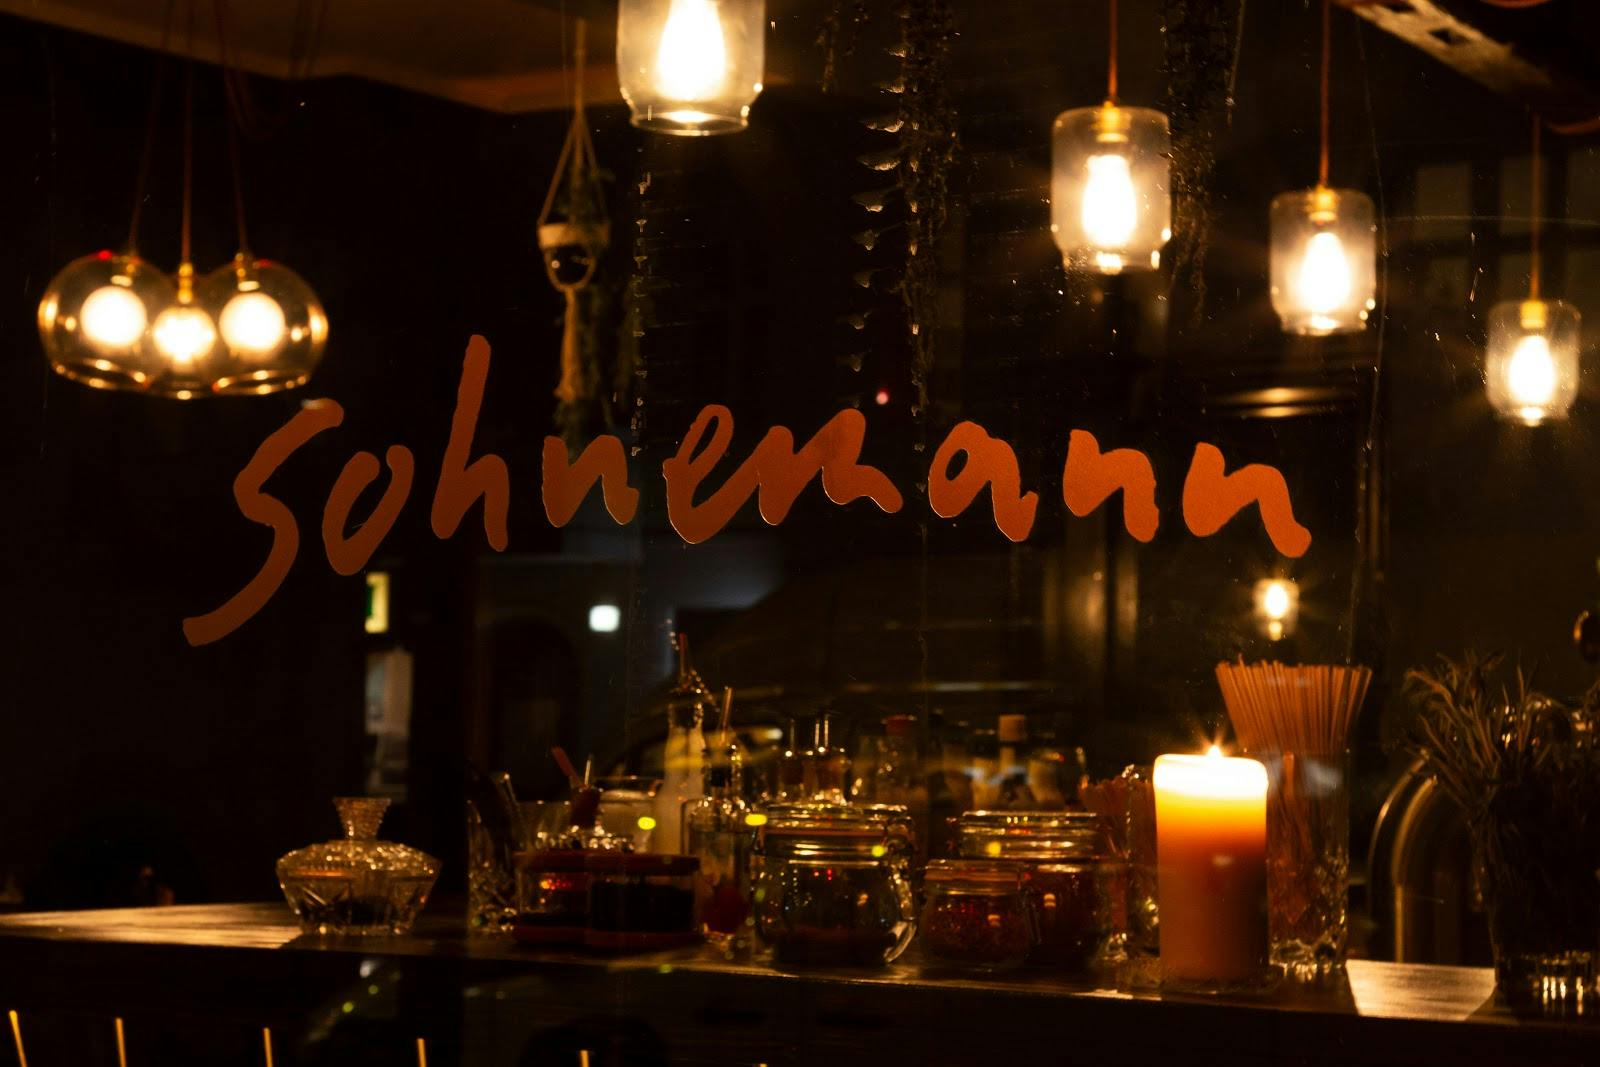 Image - Sohnemann Bar